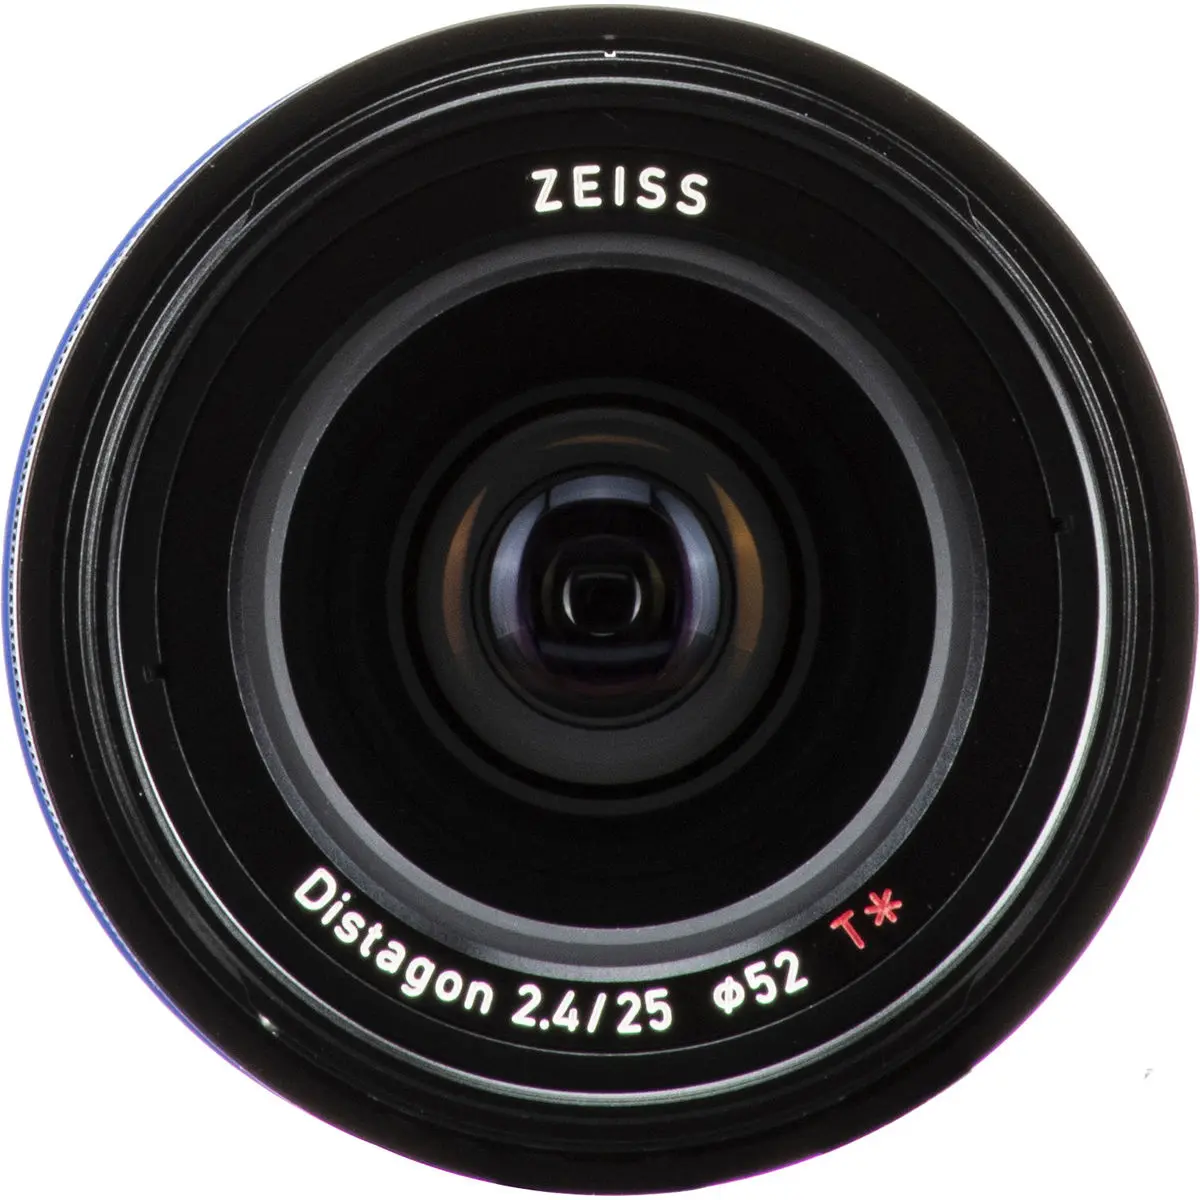 10. Carl Zeiss Loxia 2.4/25 (Sony FE) Lens